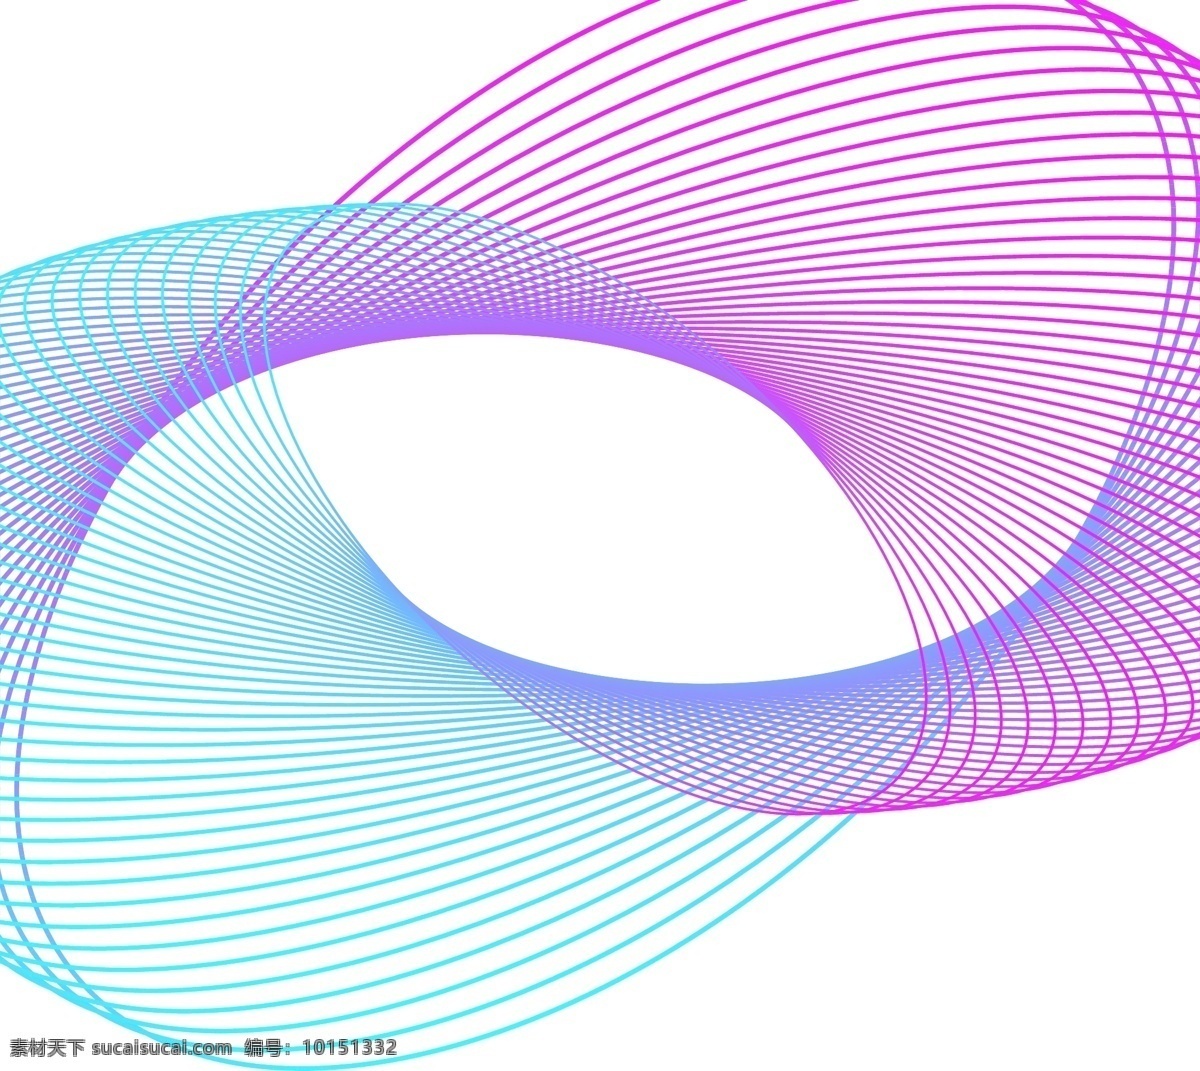 蓝紫色 彩色 渐变 线条 图案 元素 几何线条 花纹图案 几何曲线 曲线 抽象 几何 三角 框 炫彩 动感 酷炫 波纹 梦幻 精美 动感曲线 波浪纹